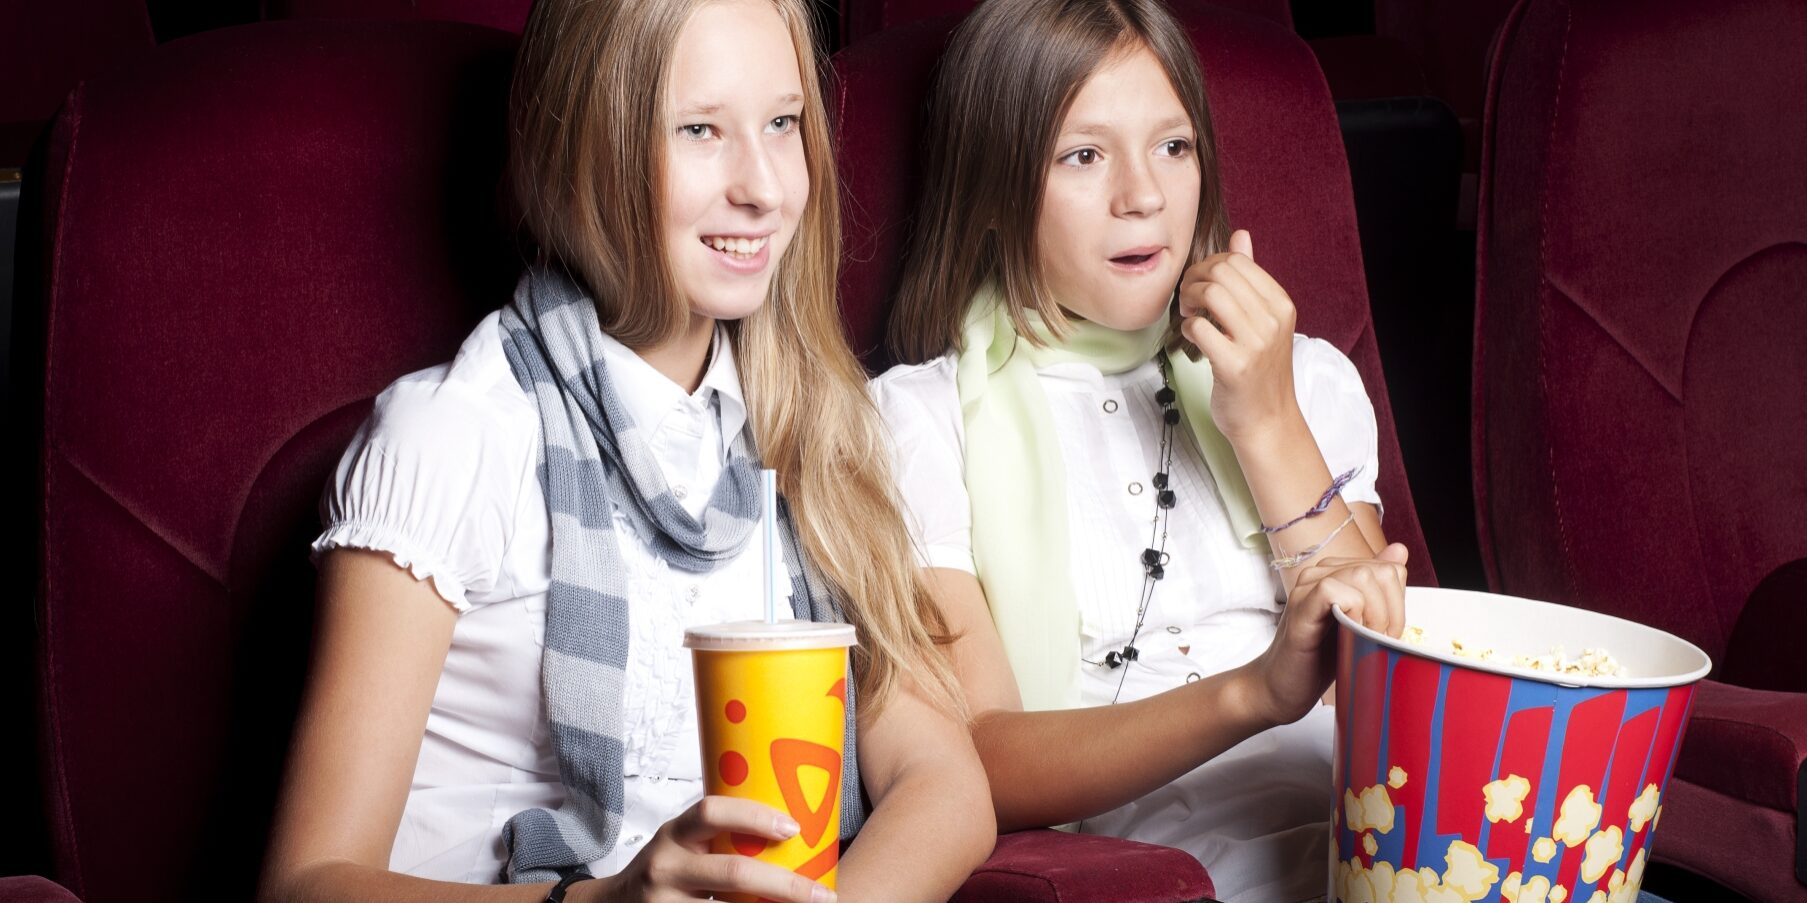 Två tjejer sitter i biostolar med popcorn och dricka i knät.